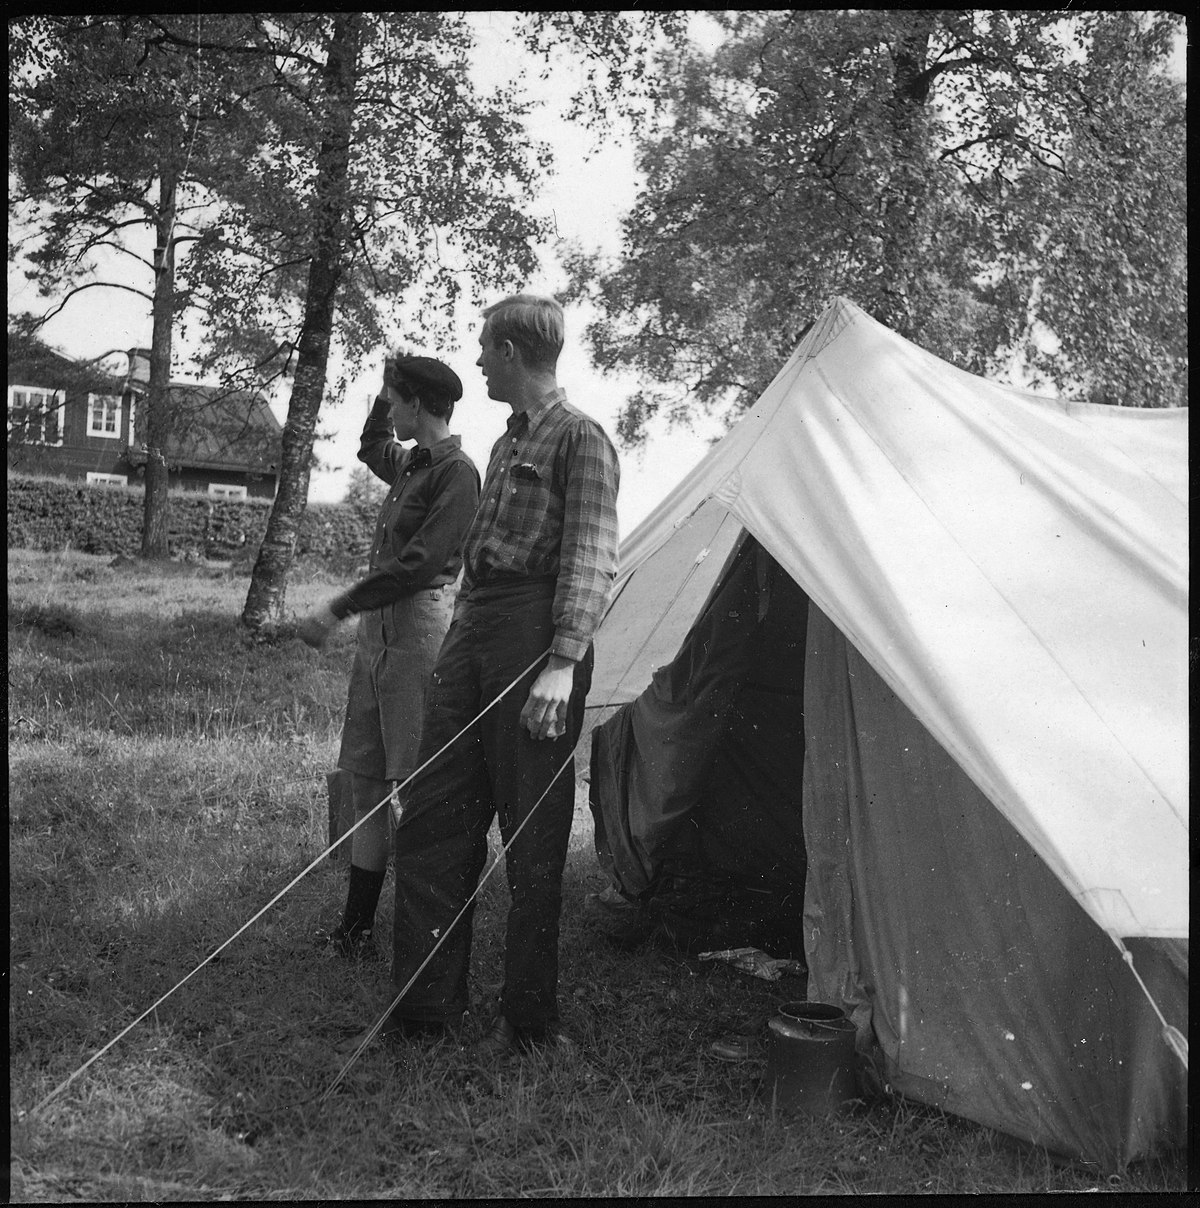 Schweden, Danemura (Dannemora): Zelt; Barbara Hamilton-Wright mit Michael Logan vor einem Zelt